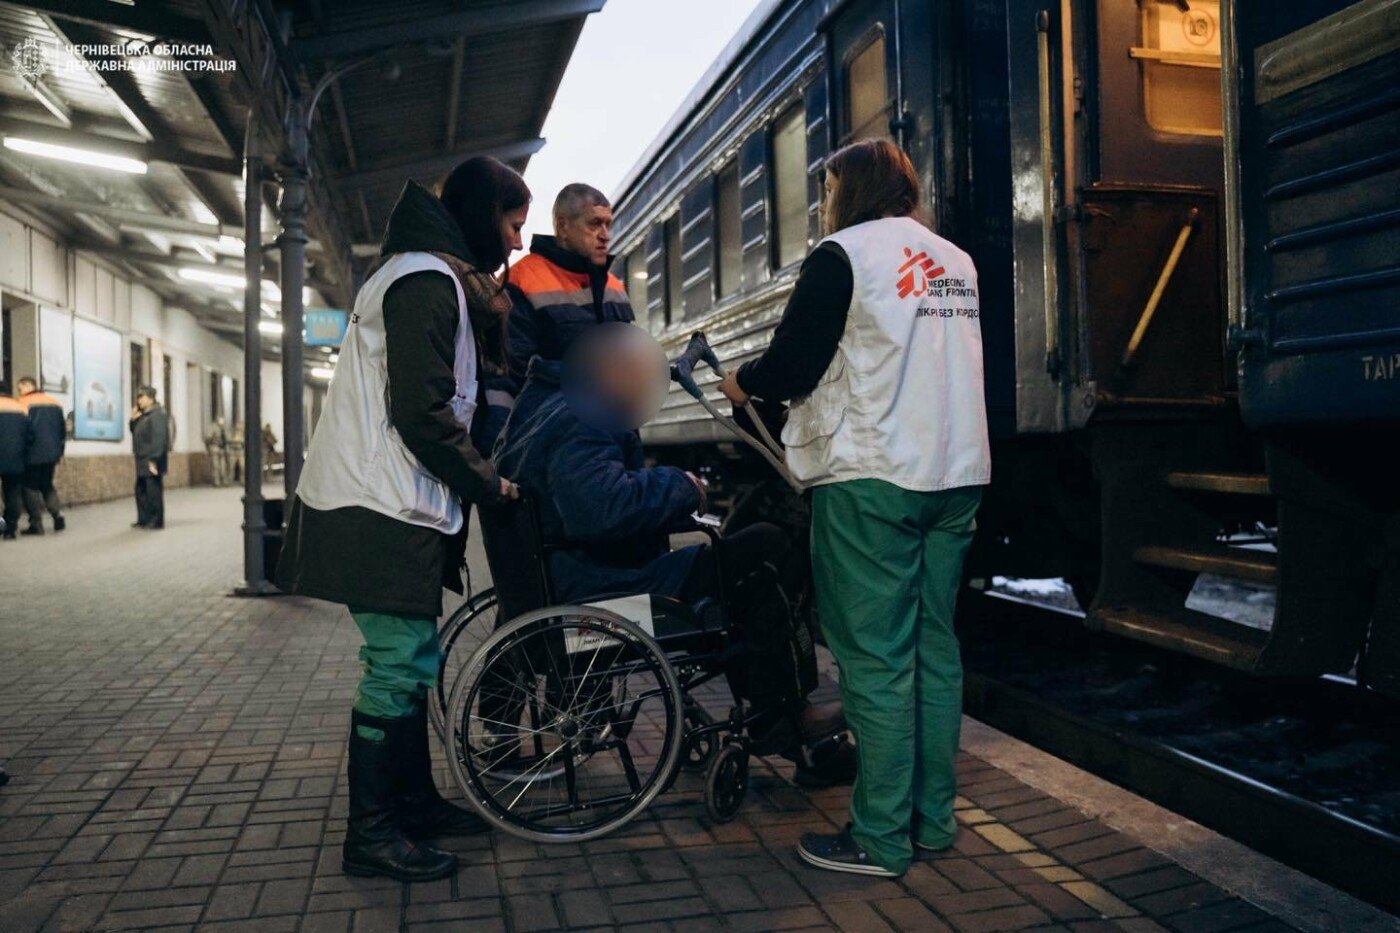 Дорога життя у реанімаційному вагоні - як на Буковину евакуюють українців медичним потягом